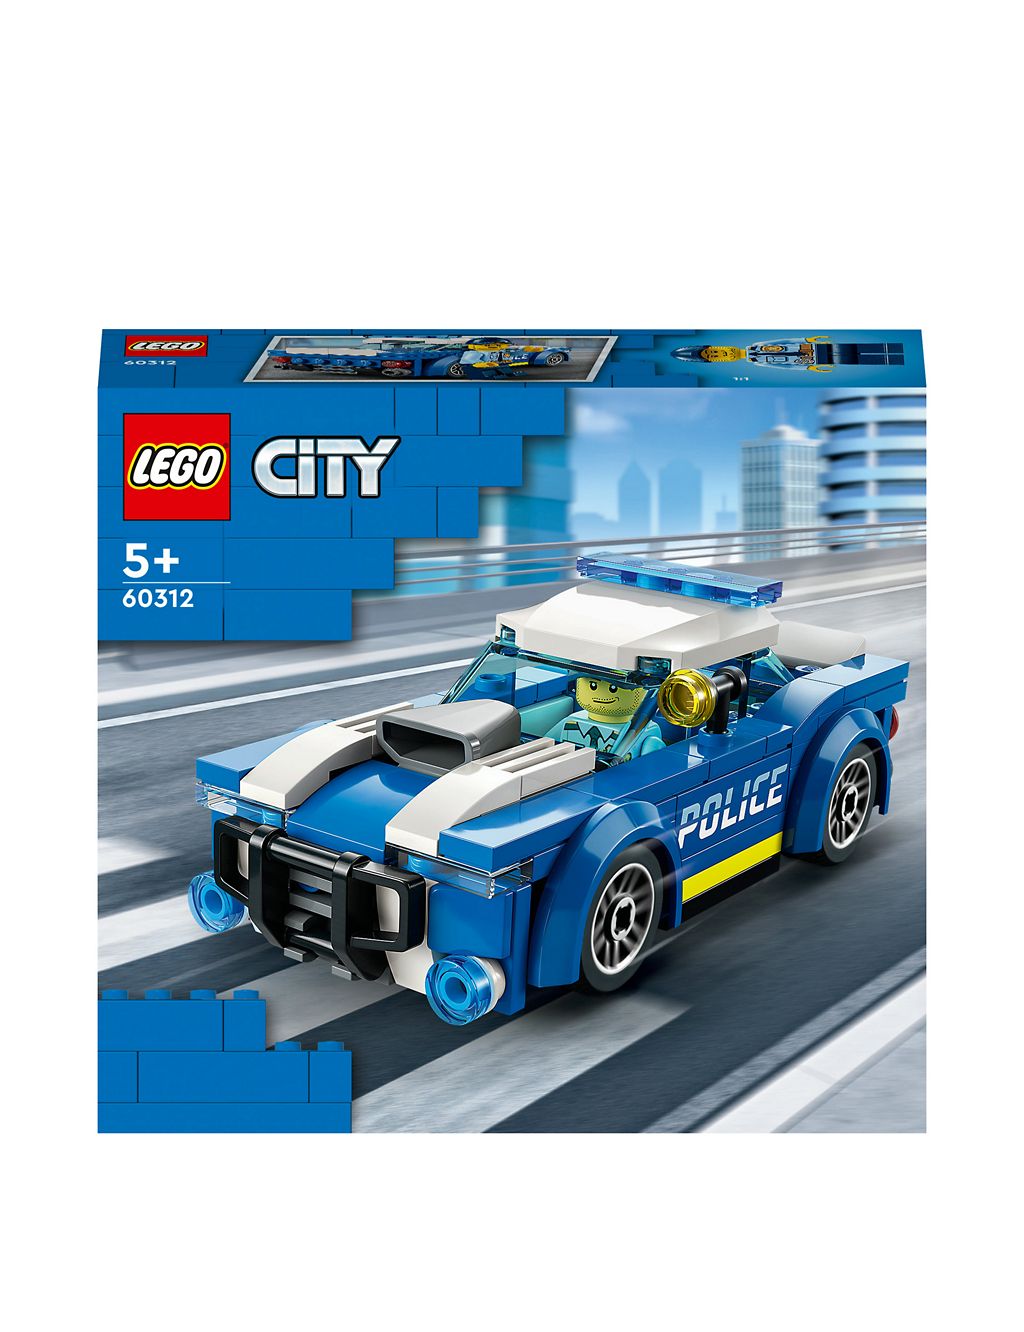 LEGO® City Police Car 60312 (5+ Yrs) 1 of 6